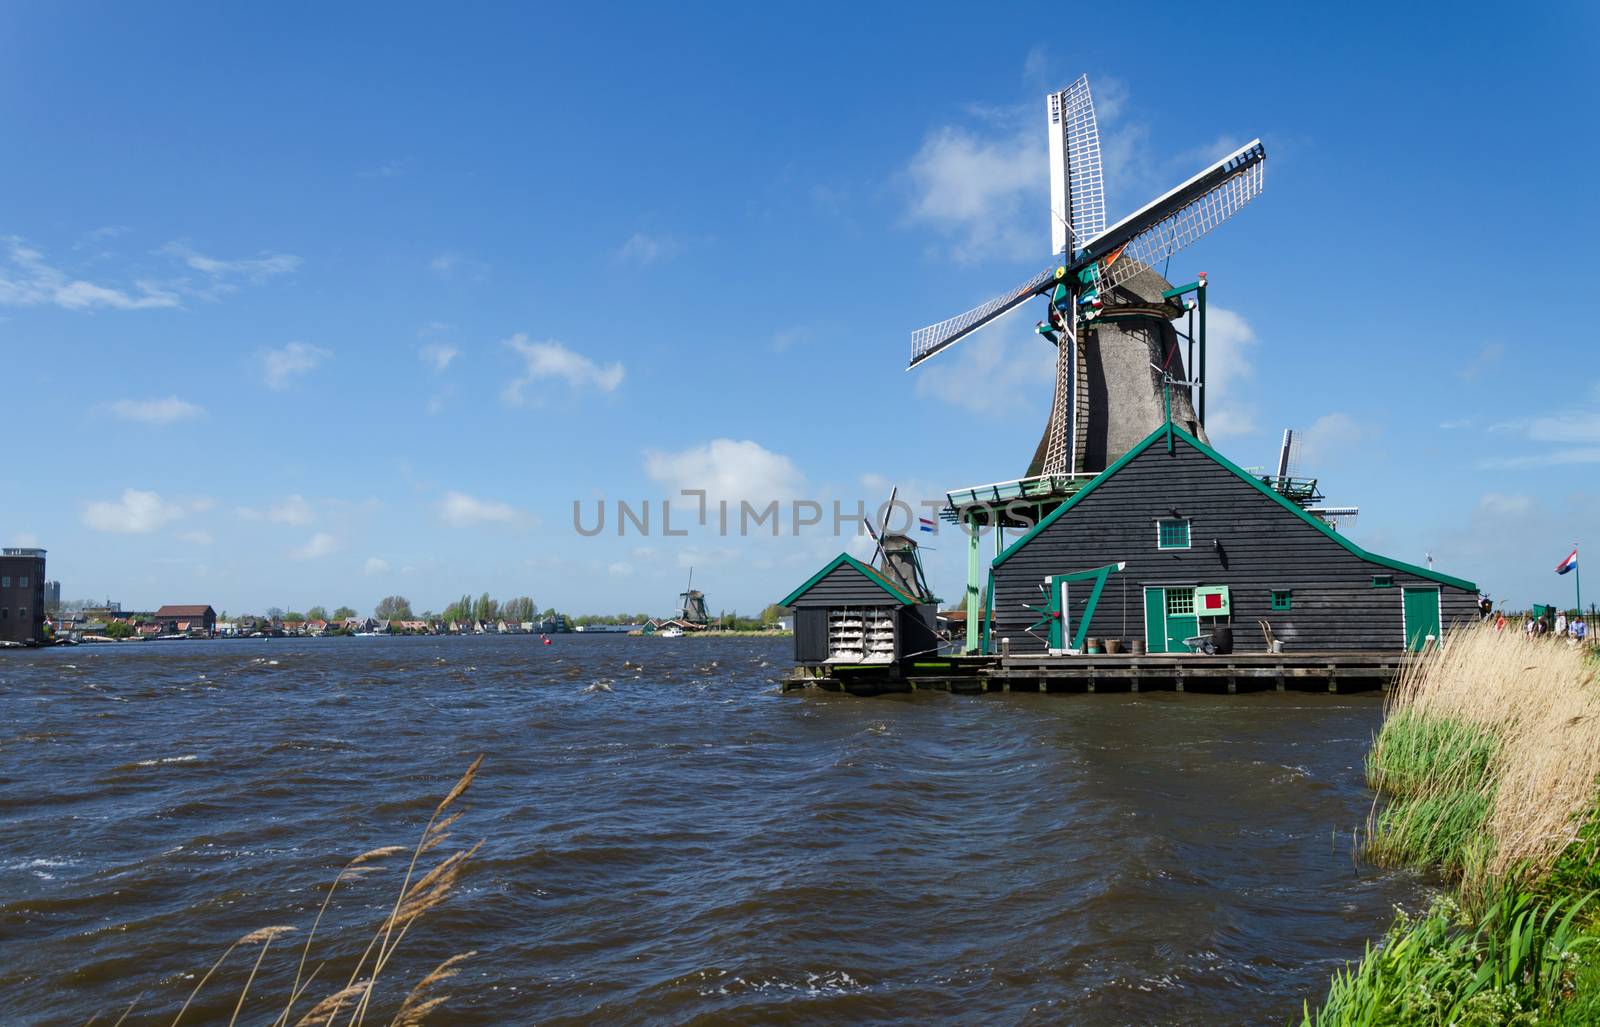 Zaanse Schans, Tourist Destination in Netherlands by siraanamwong